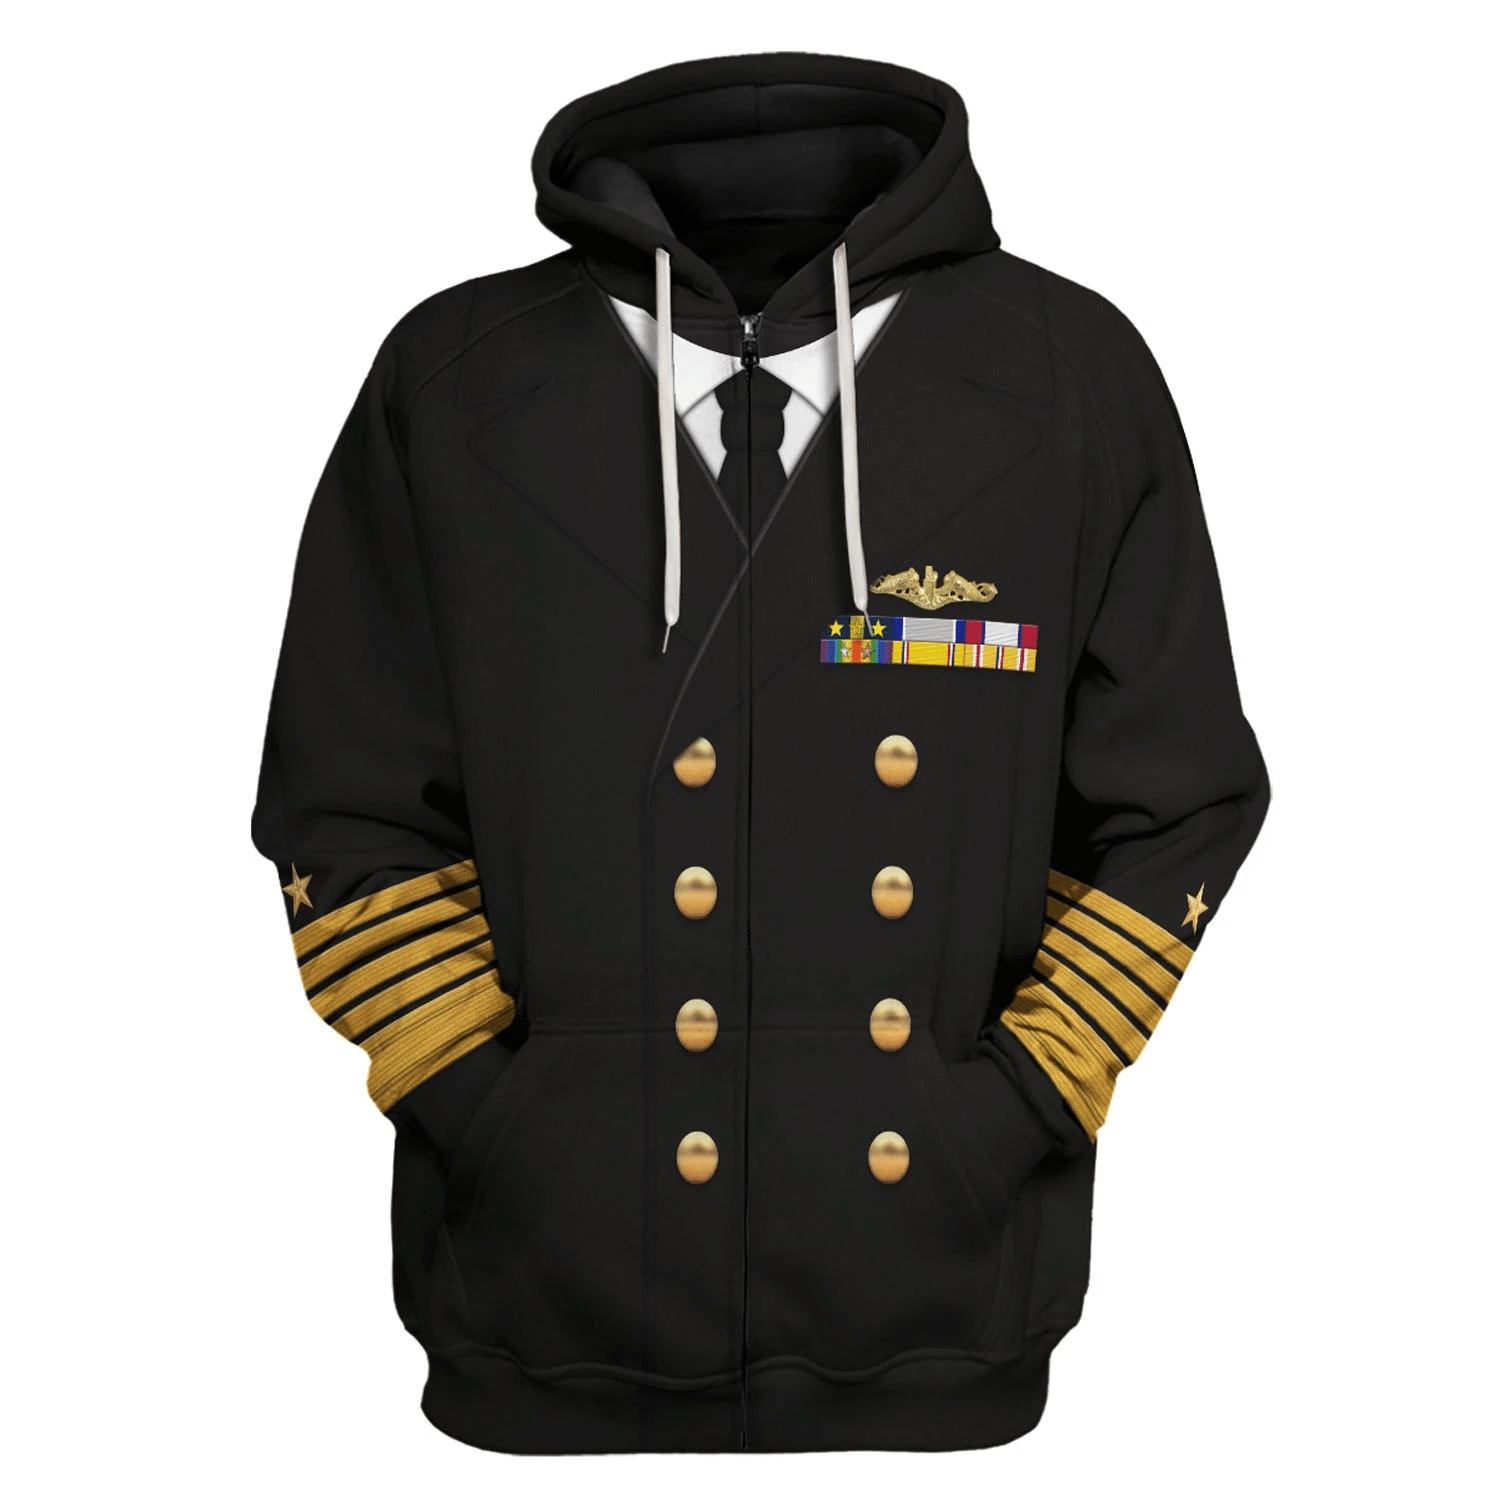 Gearhomie US Navy Fleet Admiral Chester W. Nimitz Costume hoodie zip